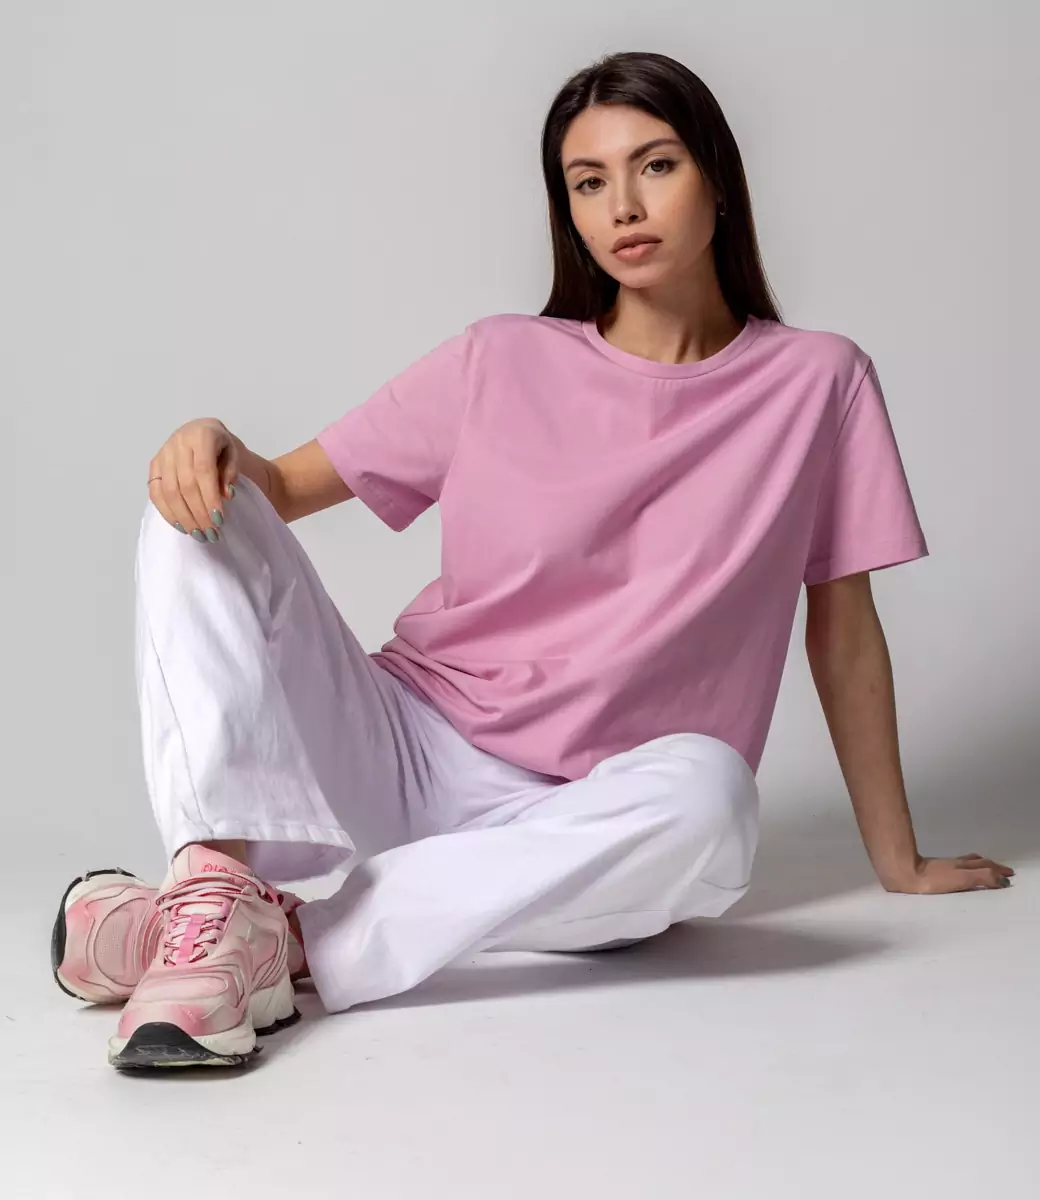 Футболка #1S600, цвет розовая лаванда - купить женские футболки оптом